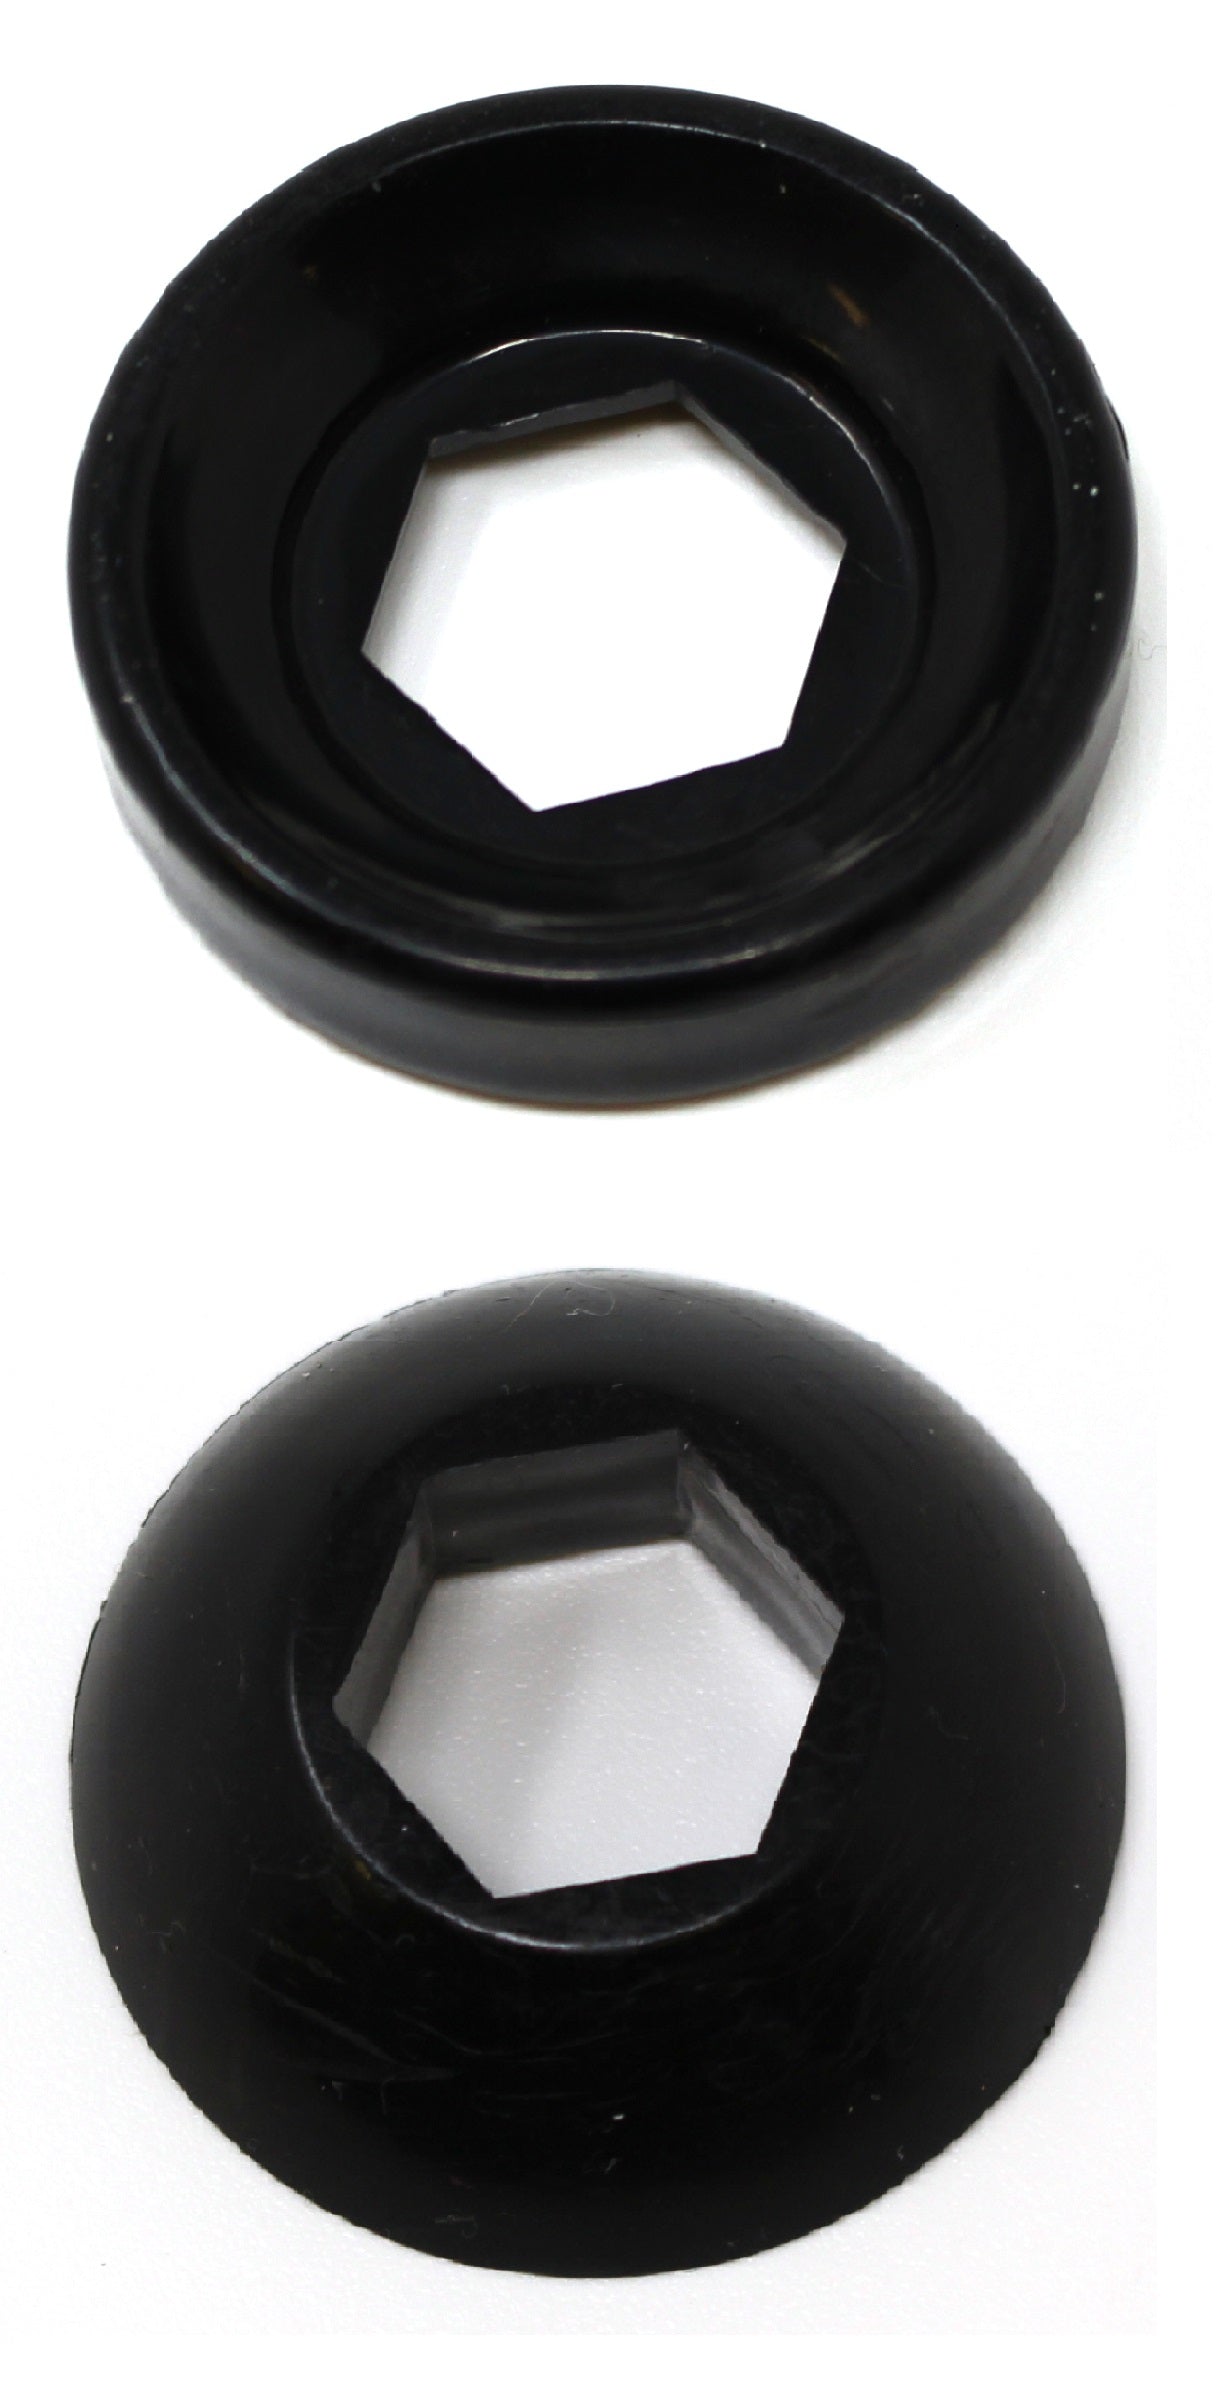 Aftermarket Polaris Strut Shock Pivot Ball Replacement Kit - Top & Bottom OEM # 5432872 5432871